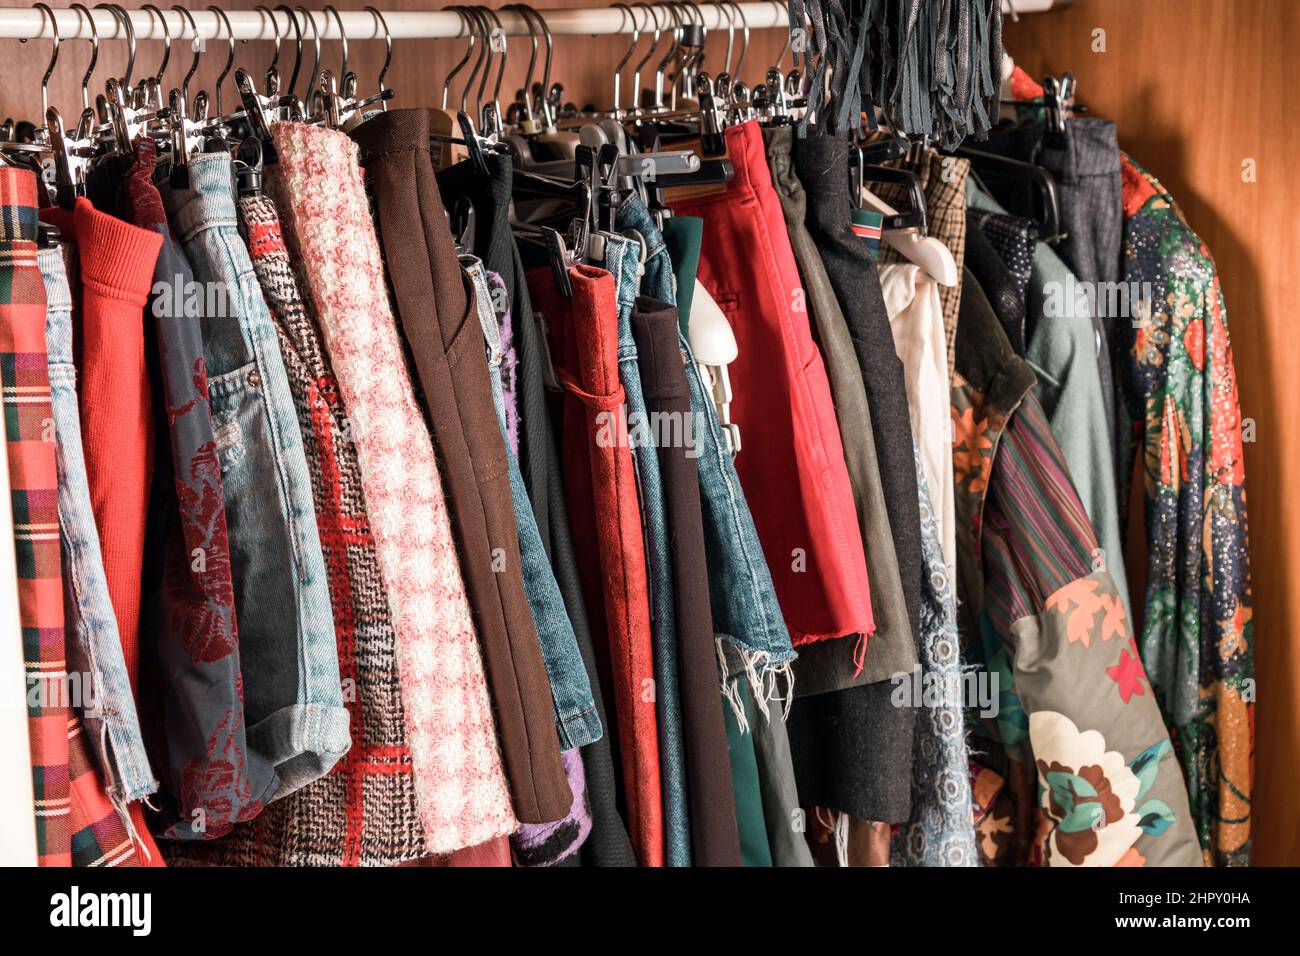 Verschiedene bunte weibliche Kleidung hängen in einem Schrank oder begehbaren Kleiderschrank innen auf einer Schiene in der Nähe Stockfoto